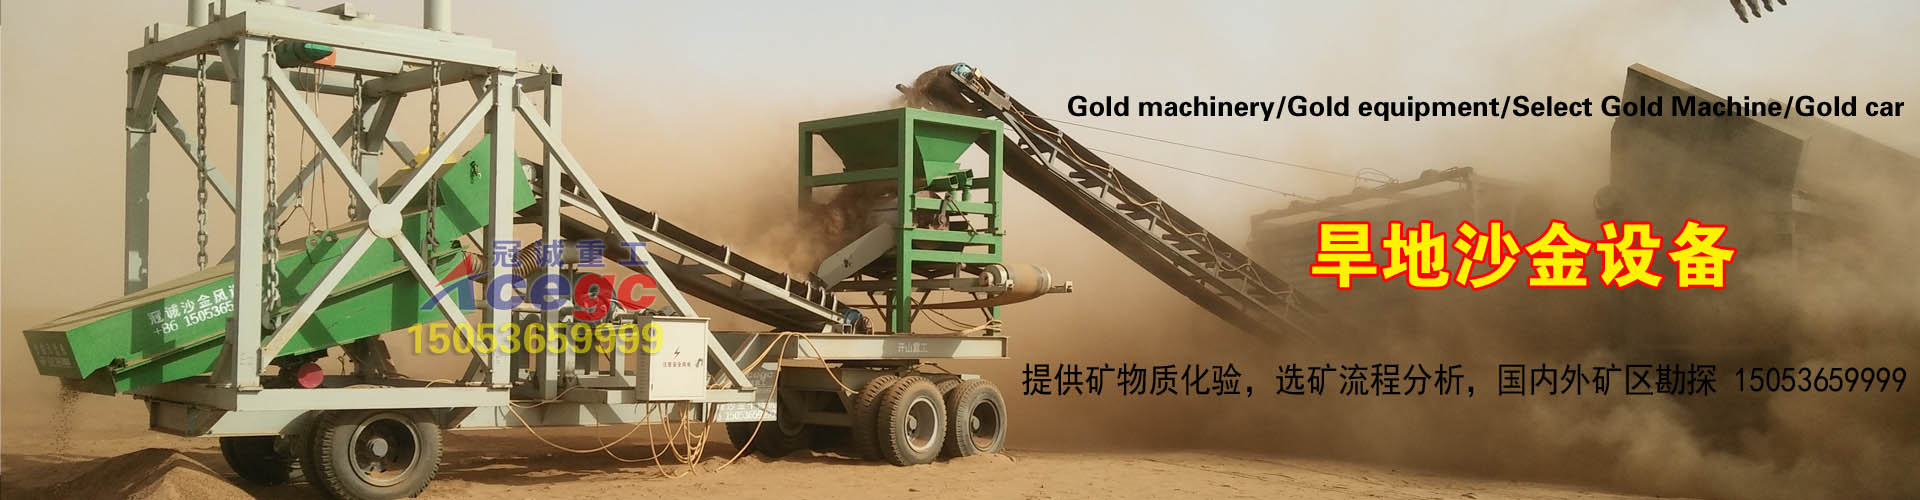 旱地沙金机械设备